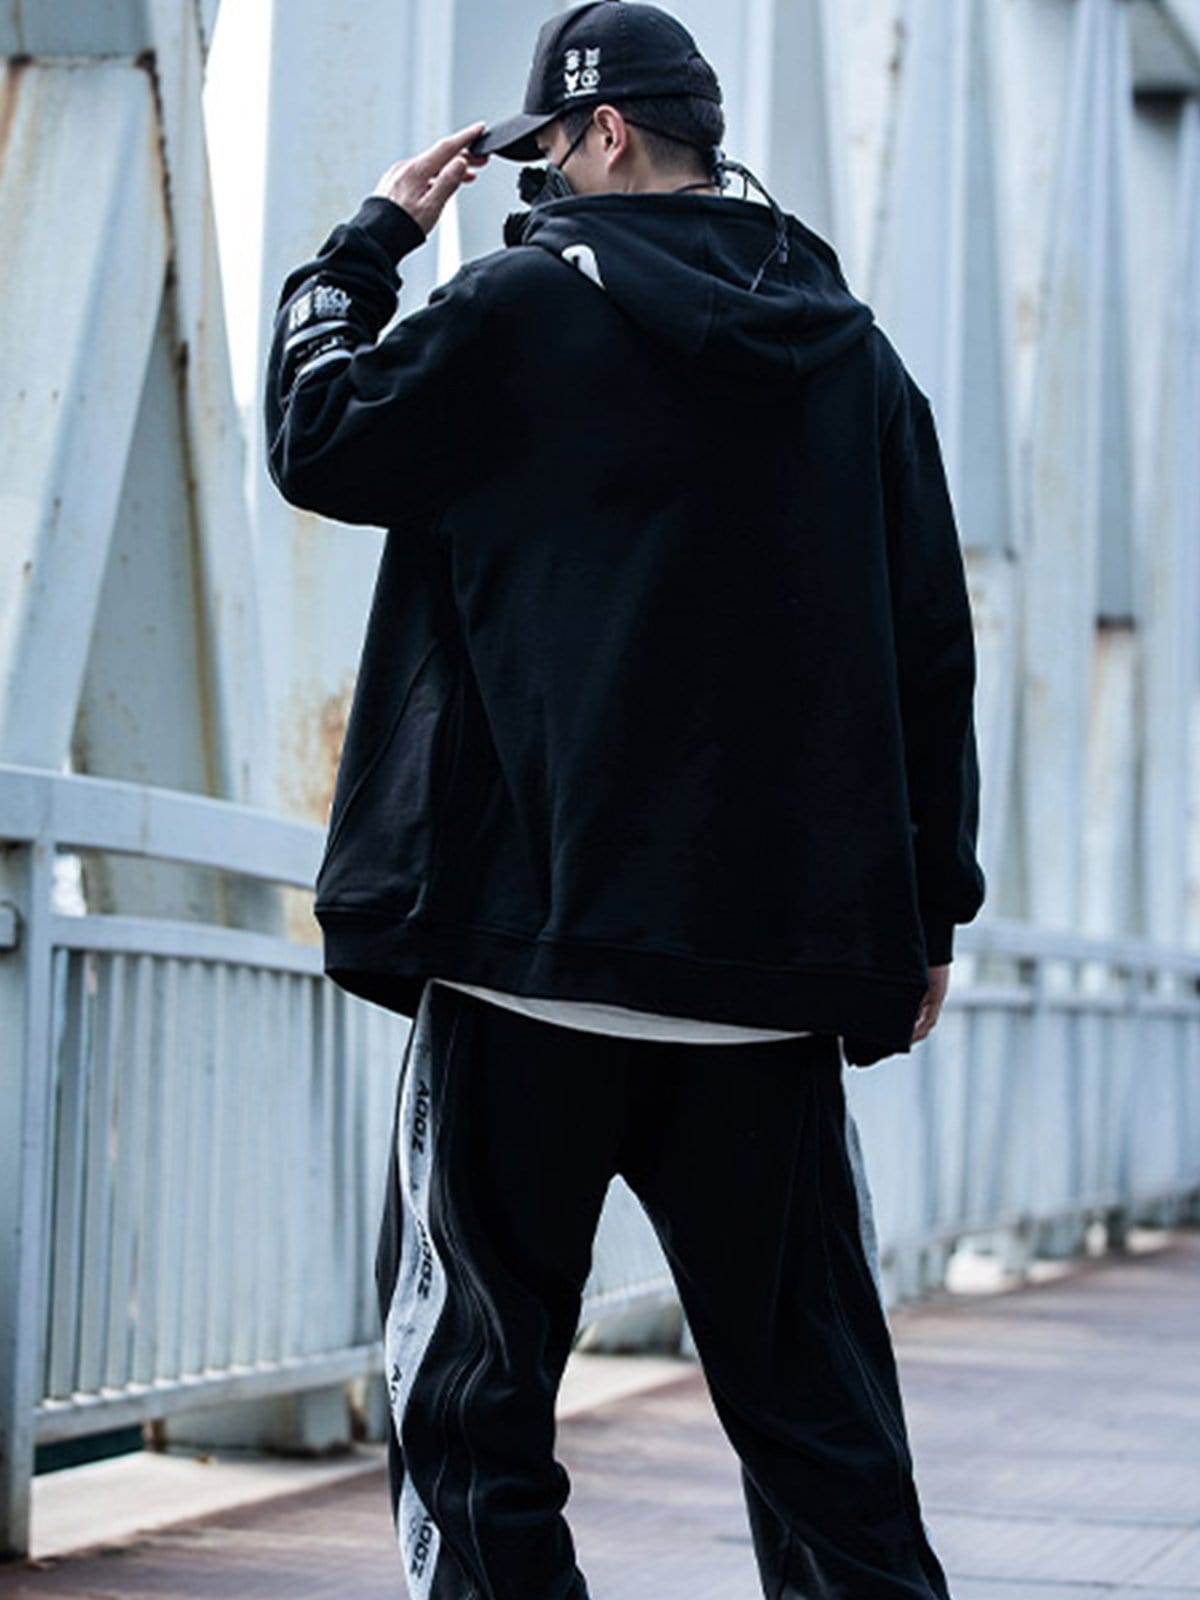 Asymmetrical Print Tilted Zipper Hoodie Streetwear Brand Techwear Combat Tactical YUGEN THEORY